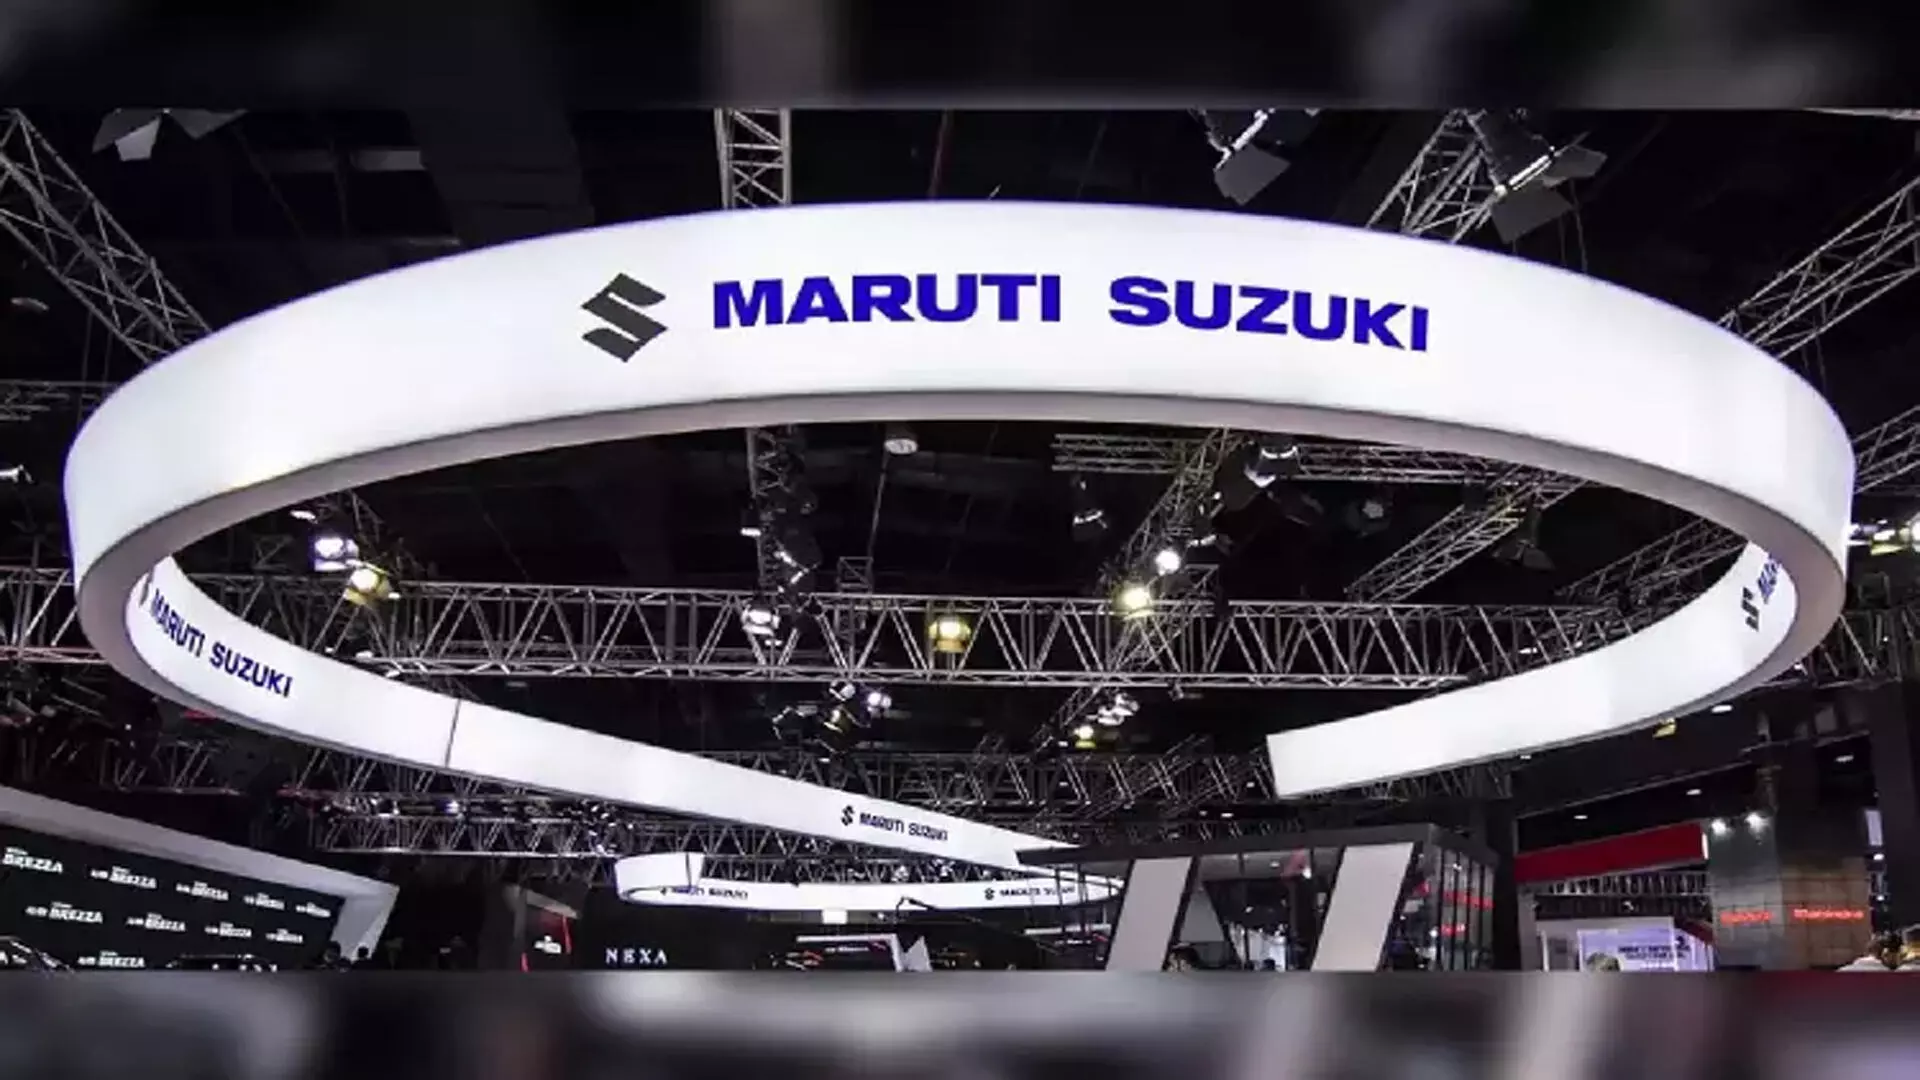 Maruti Suzuki की वाहन उत्पादन का 35 प्रतिशत रेलवे के जरिए भेजने की योजना